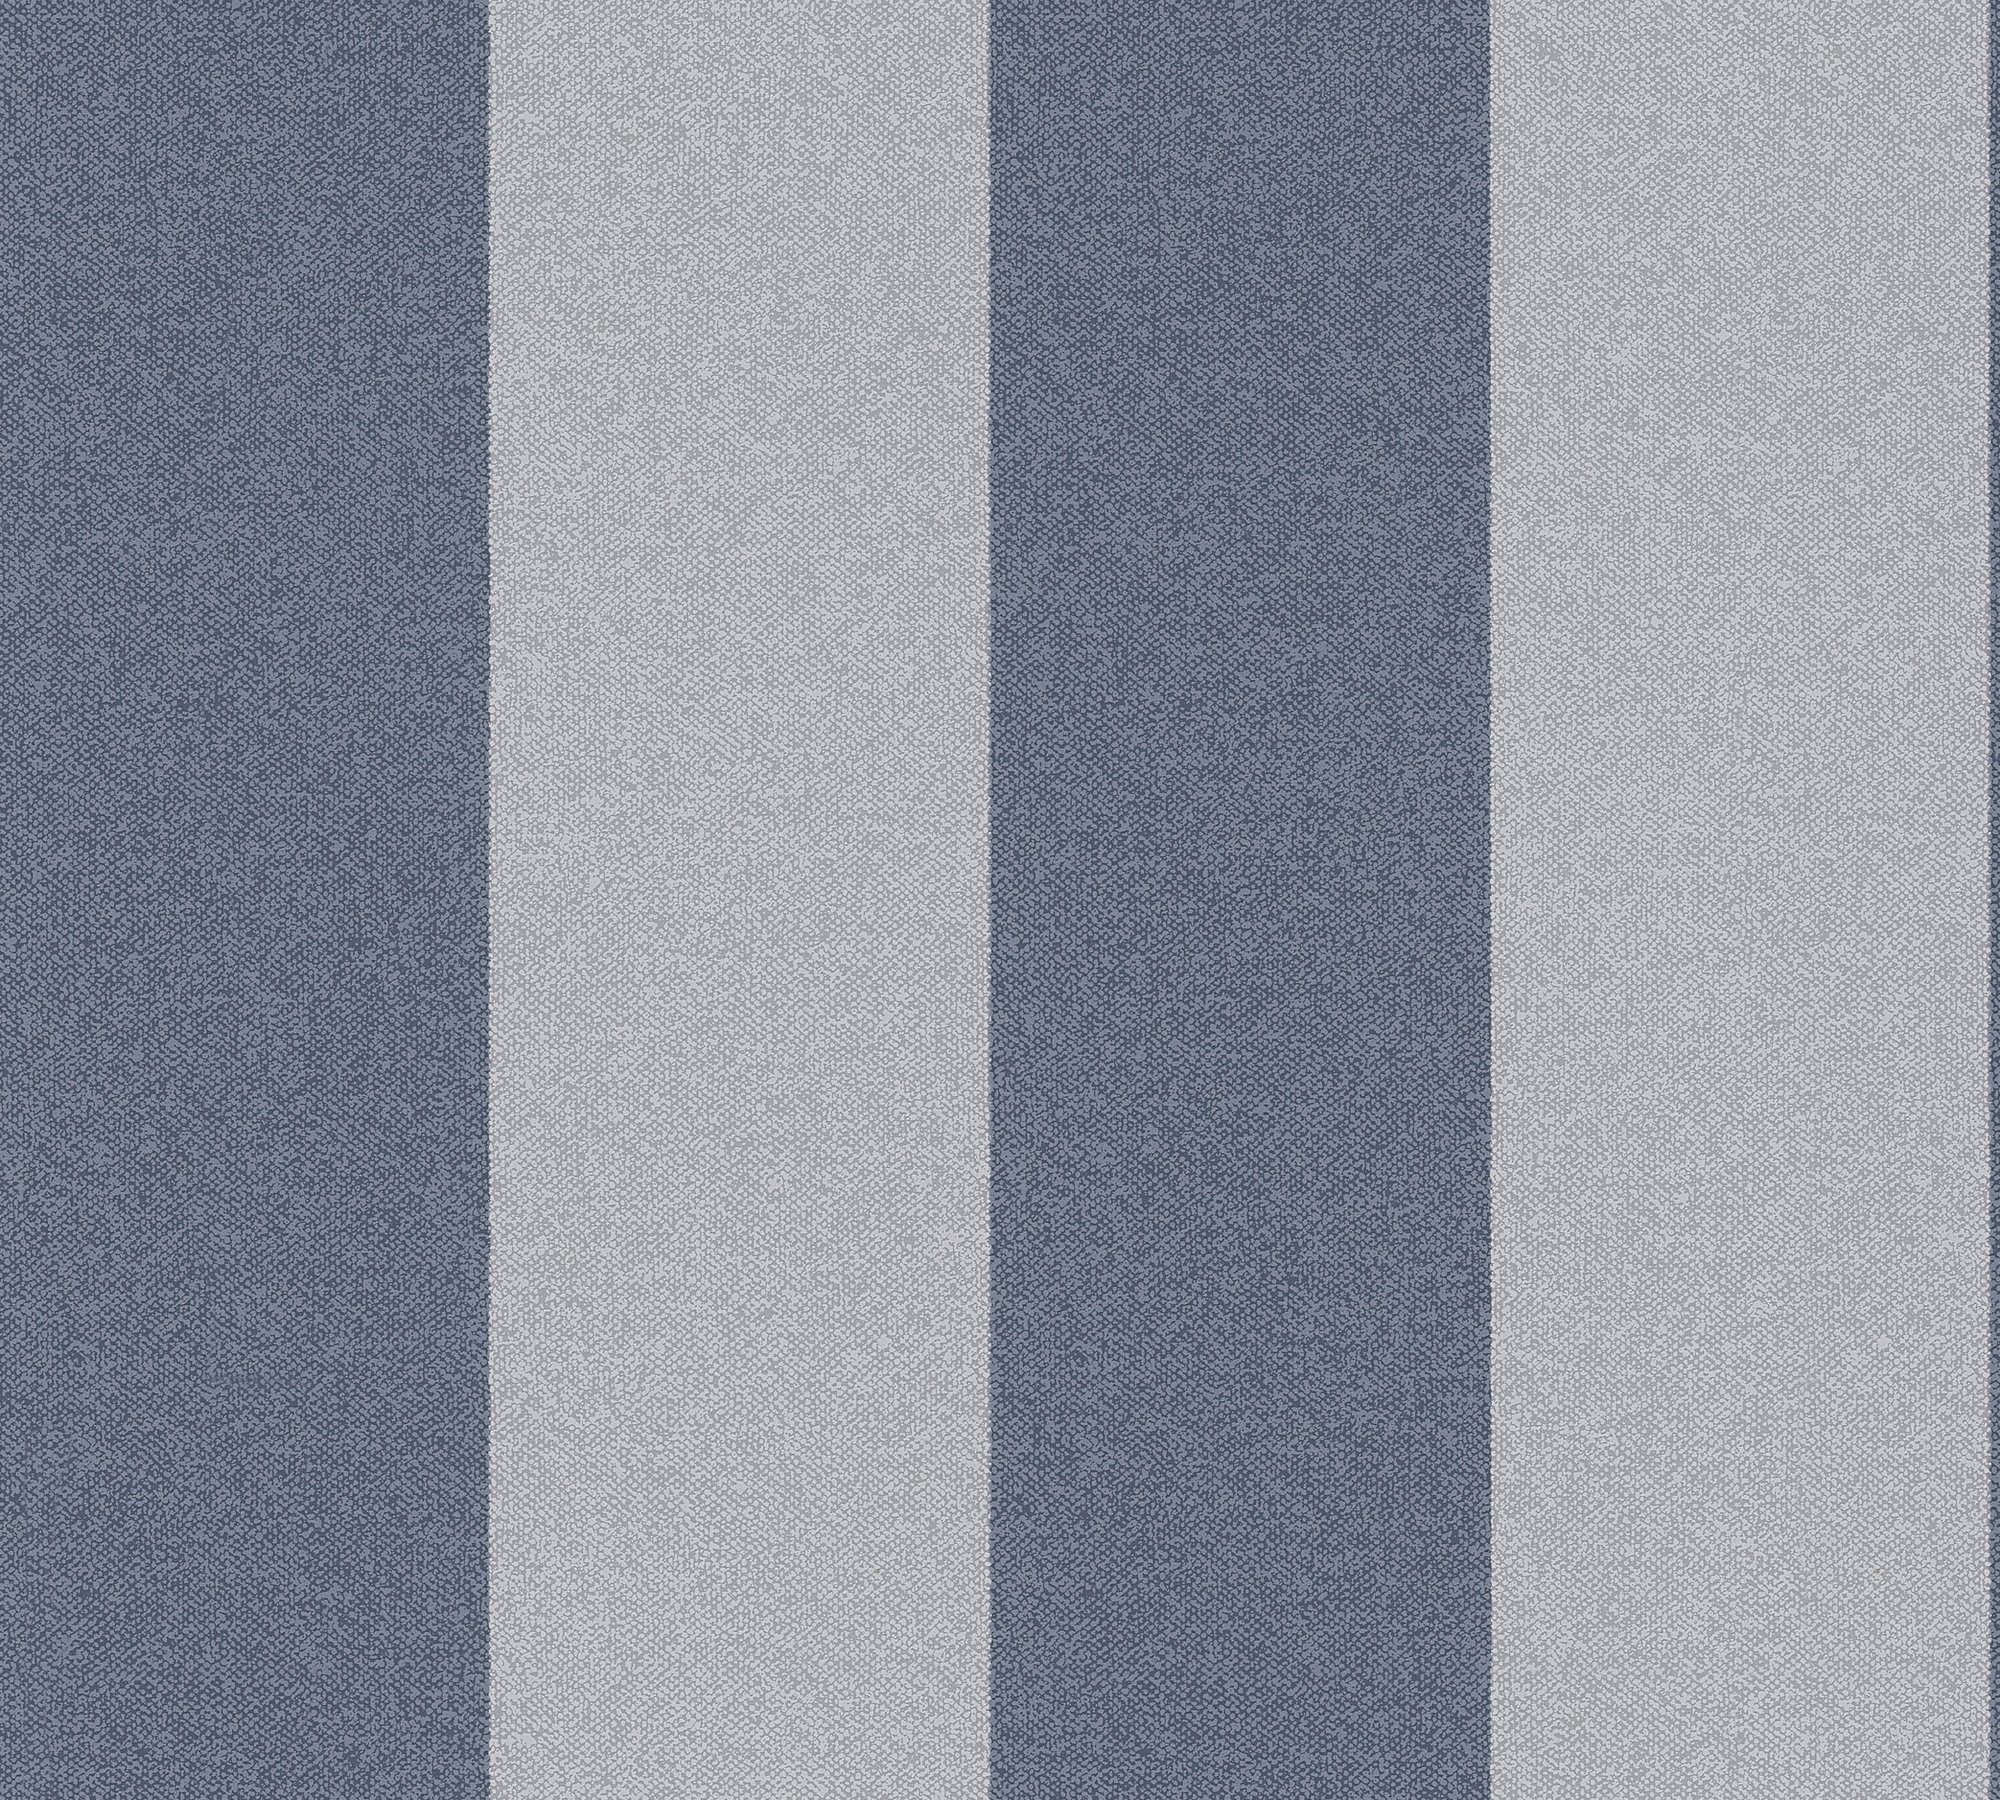 Vliestapete aufgeschäumt, dunkelblau/hellgrau New Streifen, Création Streifen A.S. Elegance, Tapete